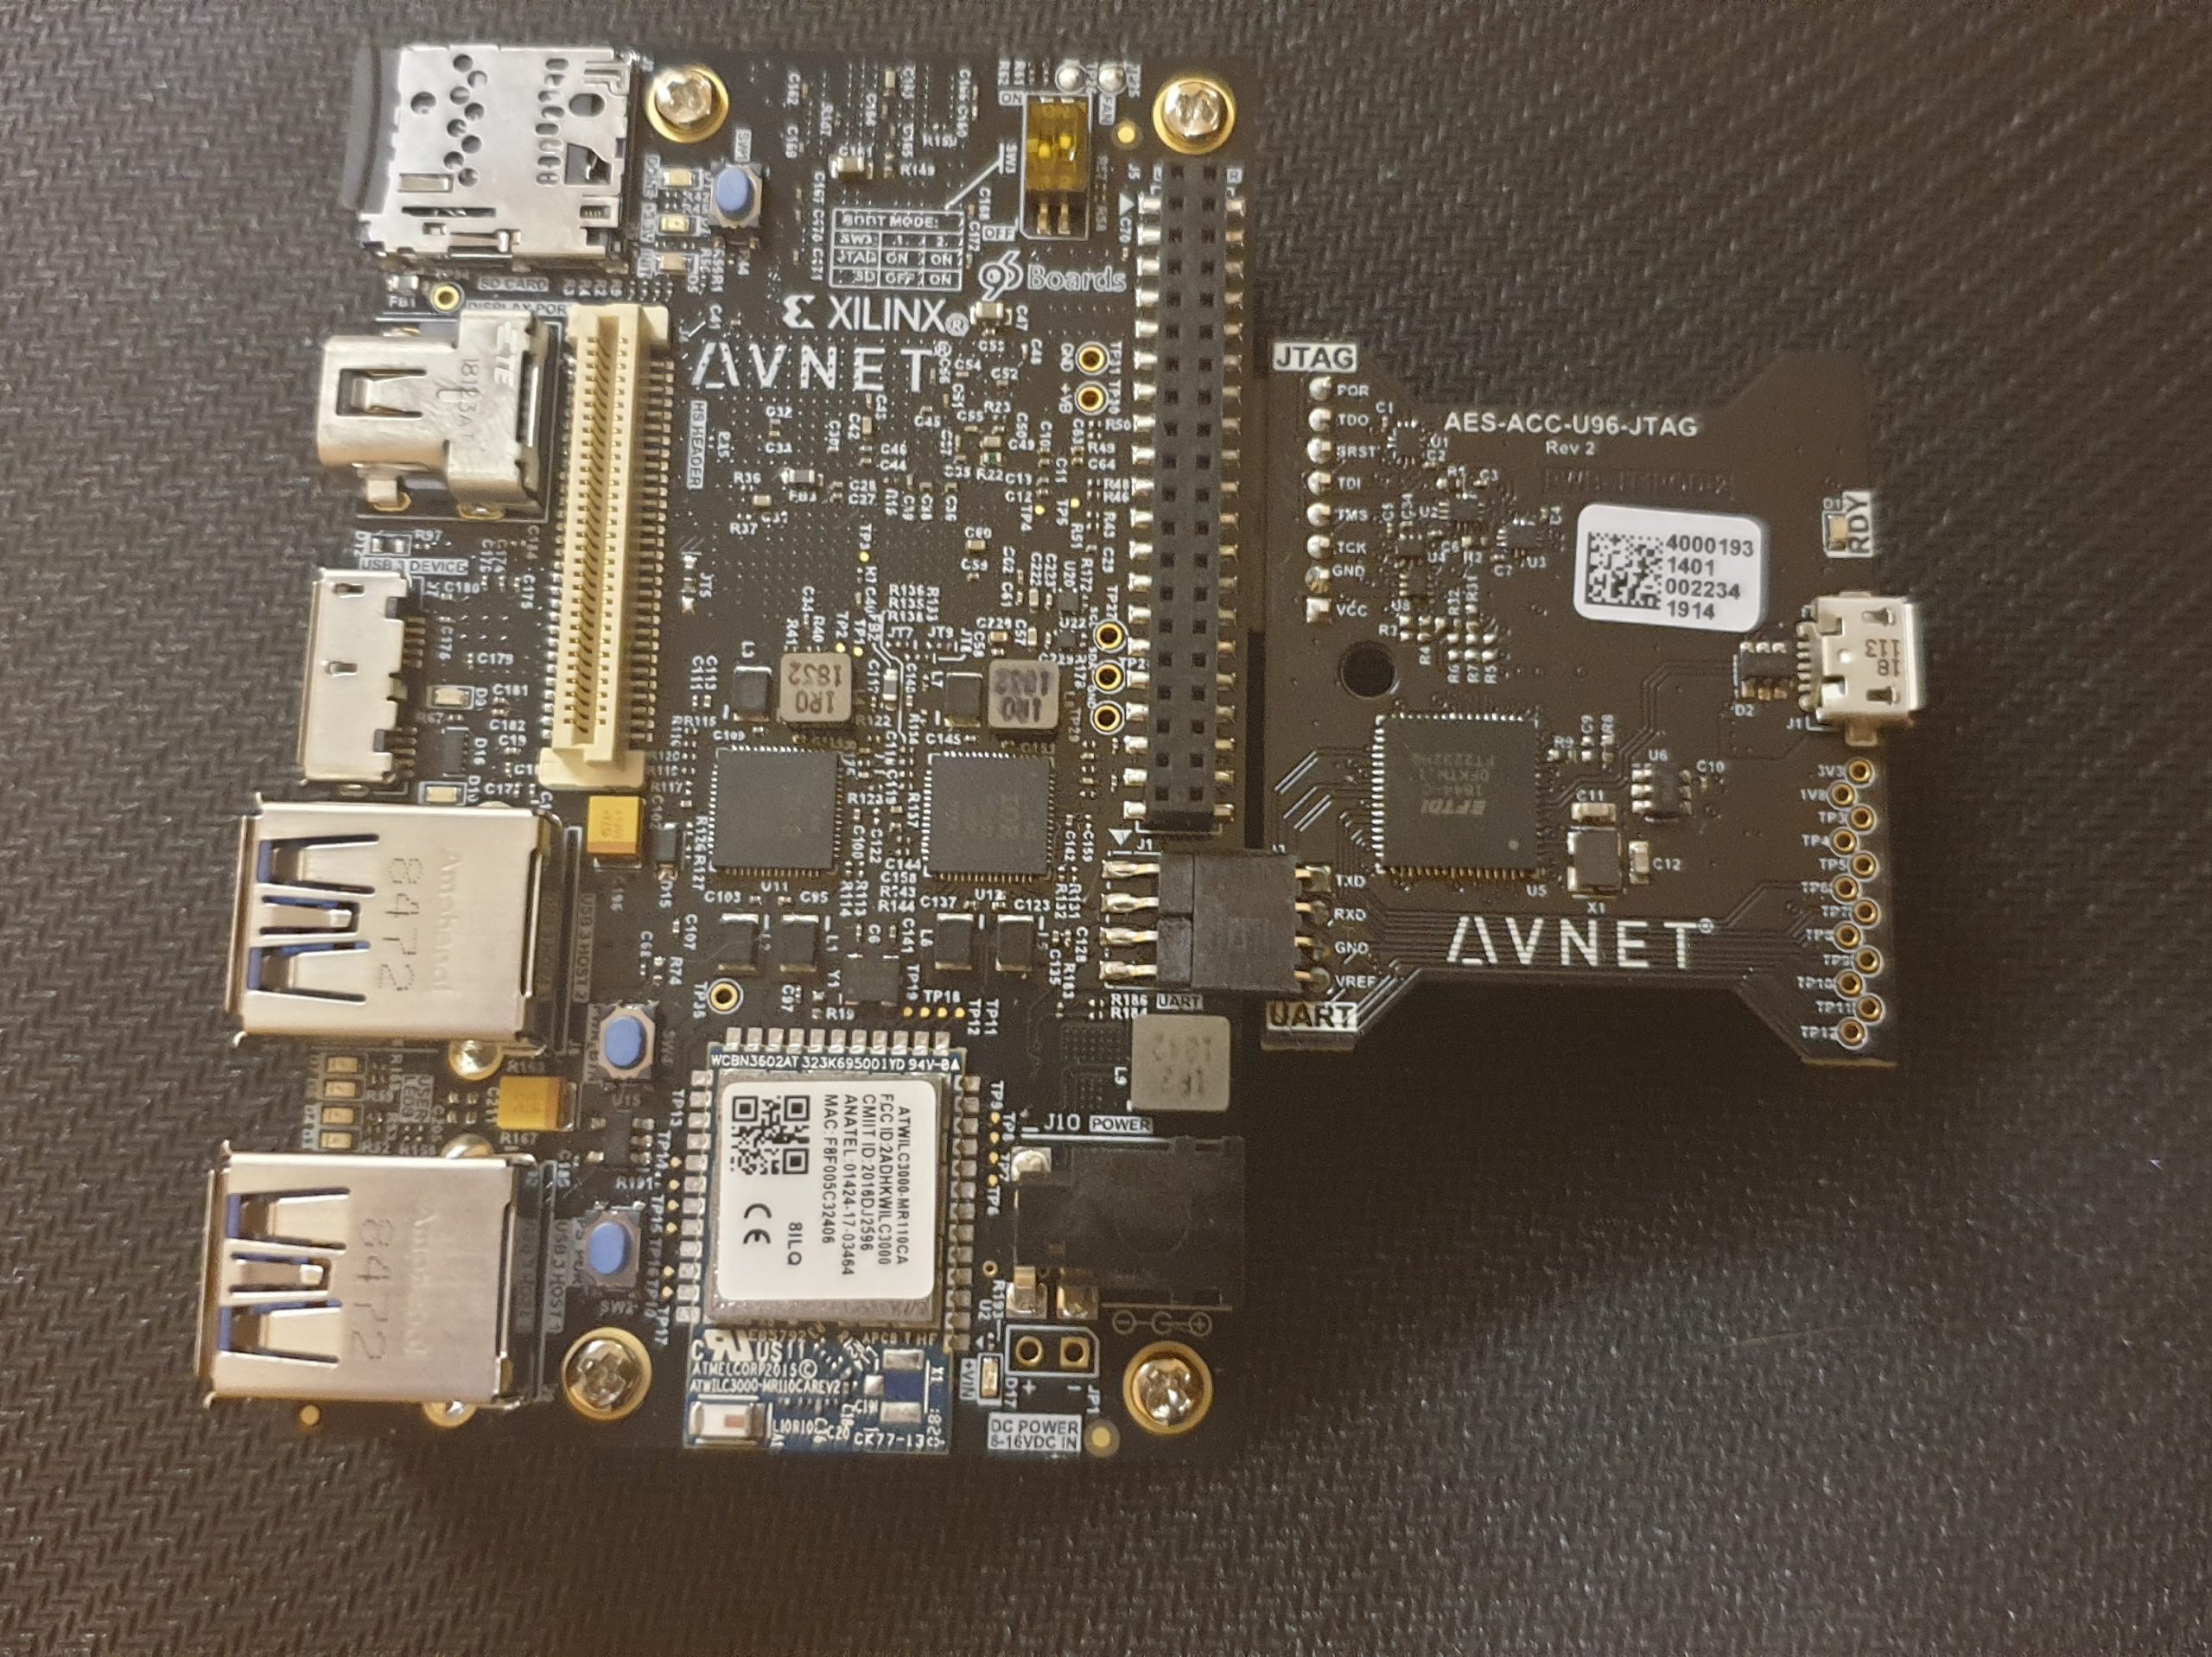 Diseños basados en la tarjeta Ultra96-v2 desarrollada por AVNET incorporando una FPGA de Xilinx.